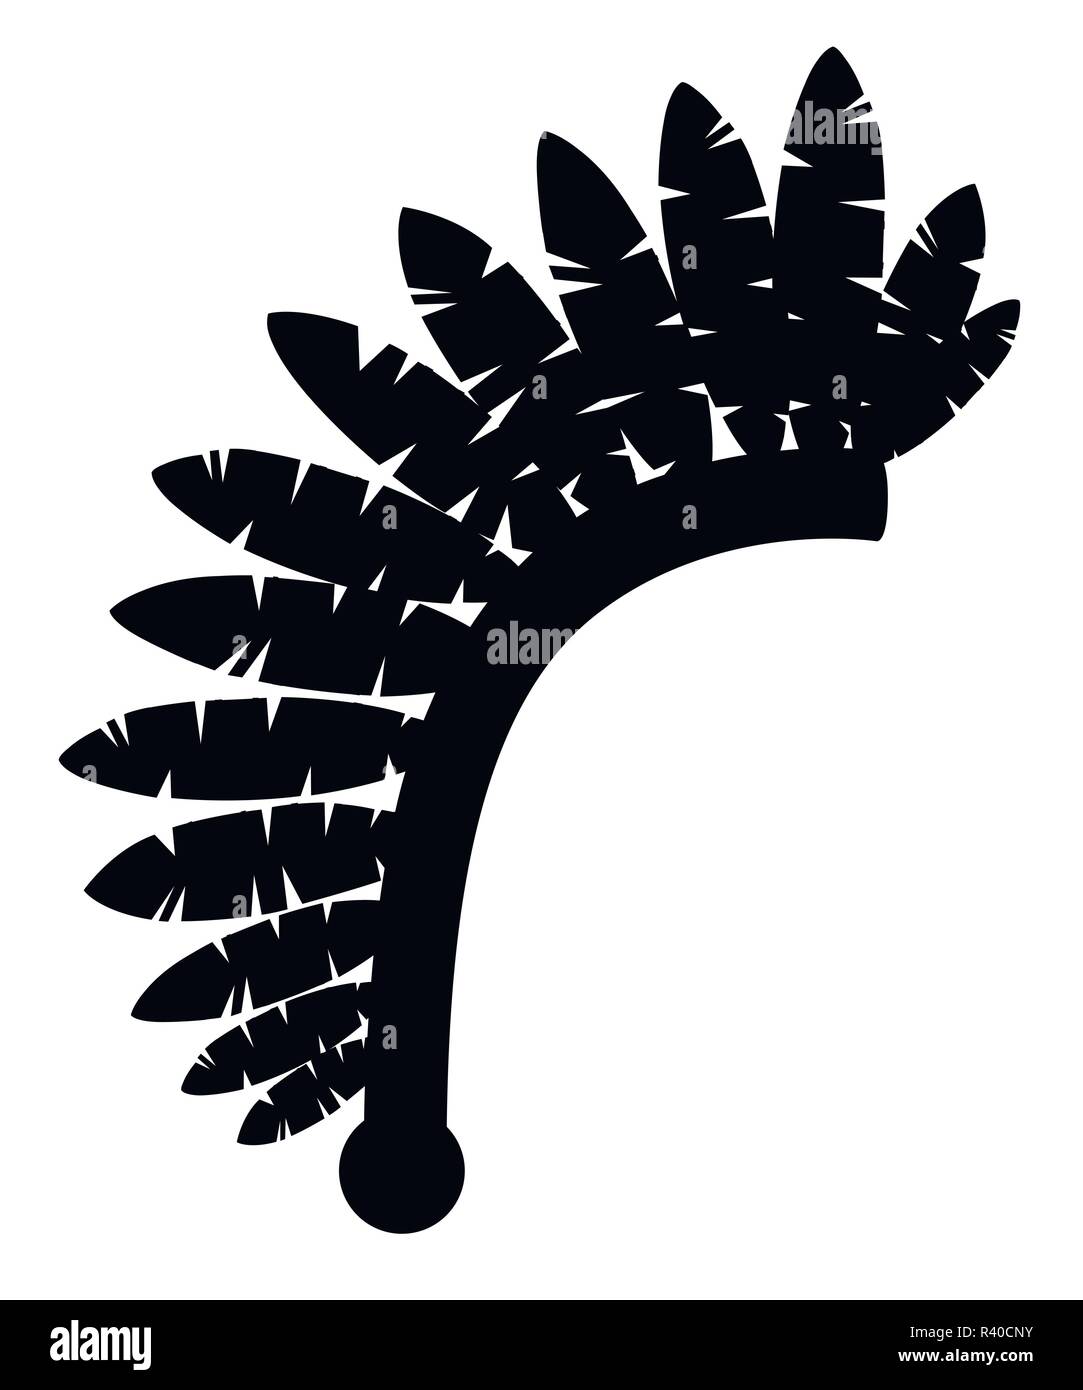 Schwarze Silhouette. Indische Kopfschmuck. Warbonnet Symbol. Kopfschmuck mit Federn. Flache Vector Illustration auf weißem Hintergrund. Stock Vektor